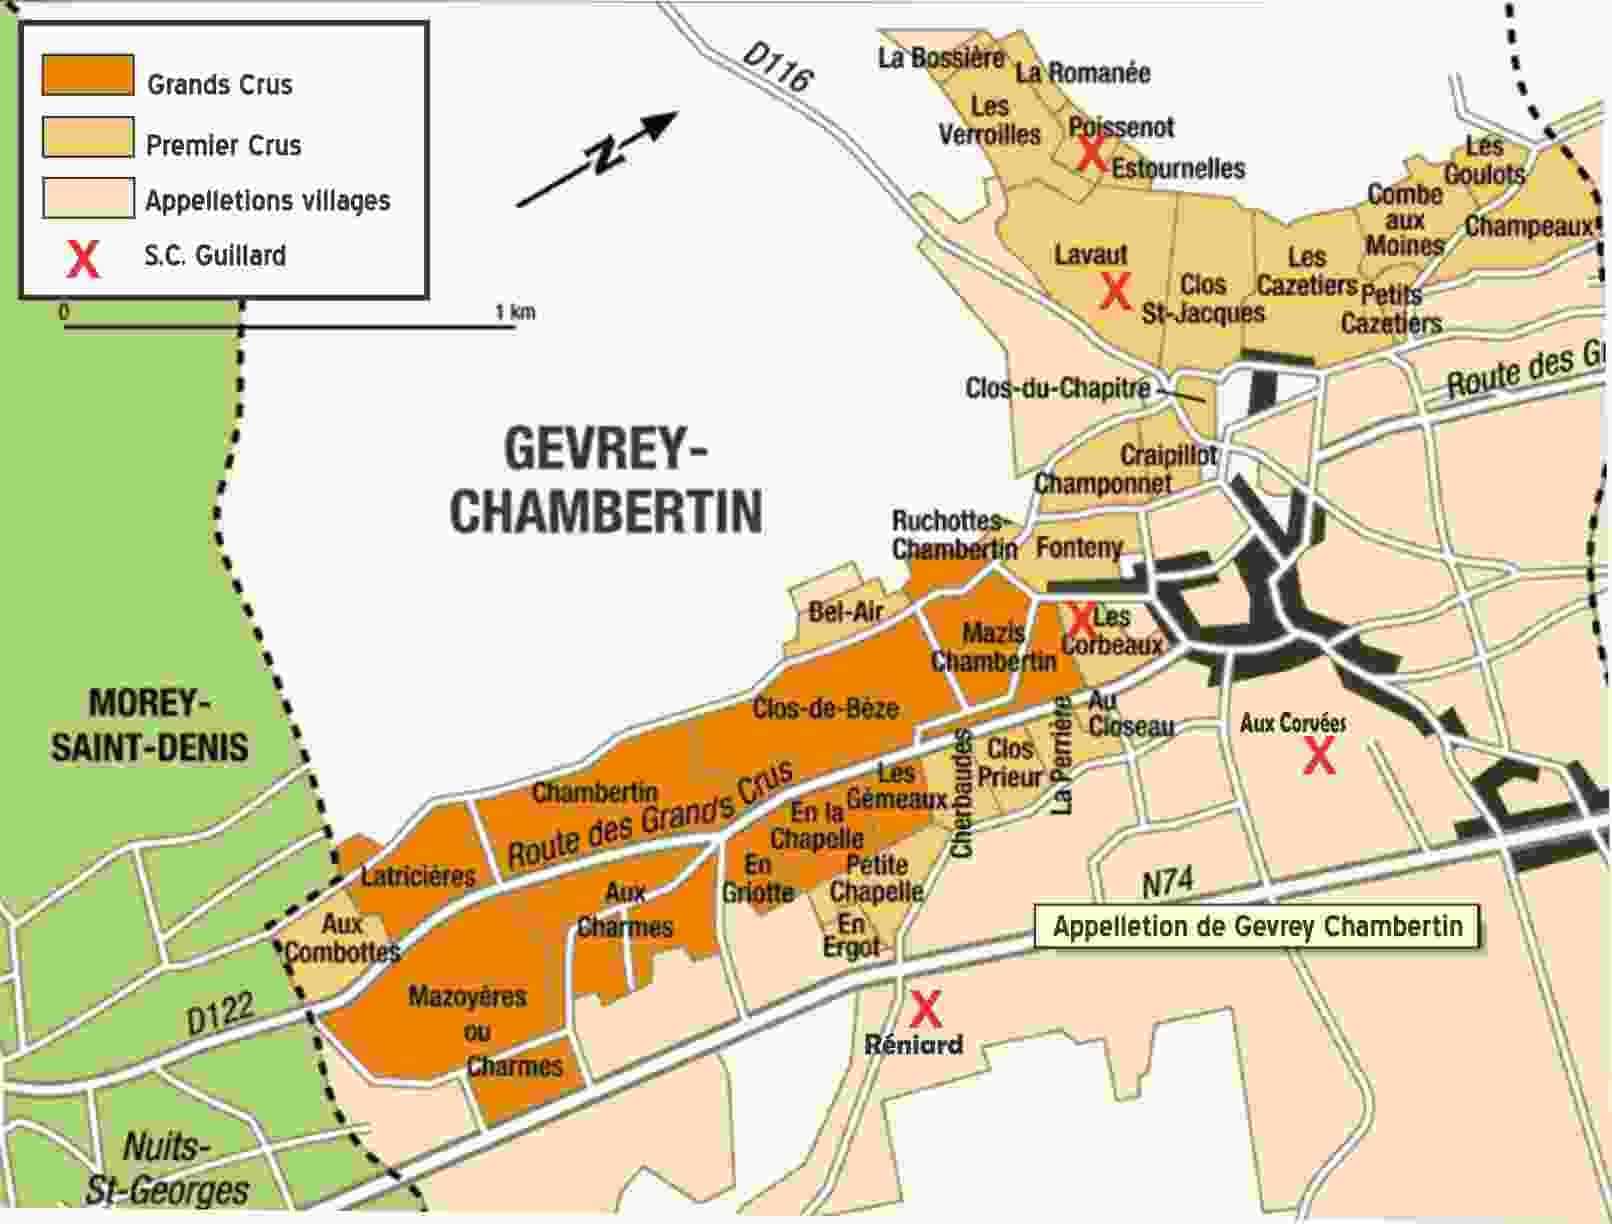 מפת Gevrey Chambertin - תשעה סוגי יינות Grand cru, ו-26 סוגי Premier cru